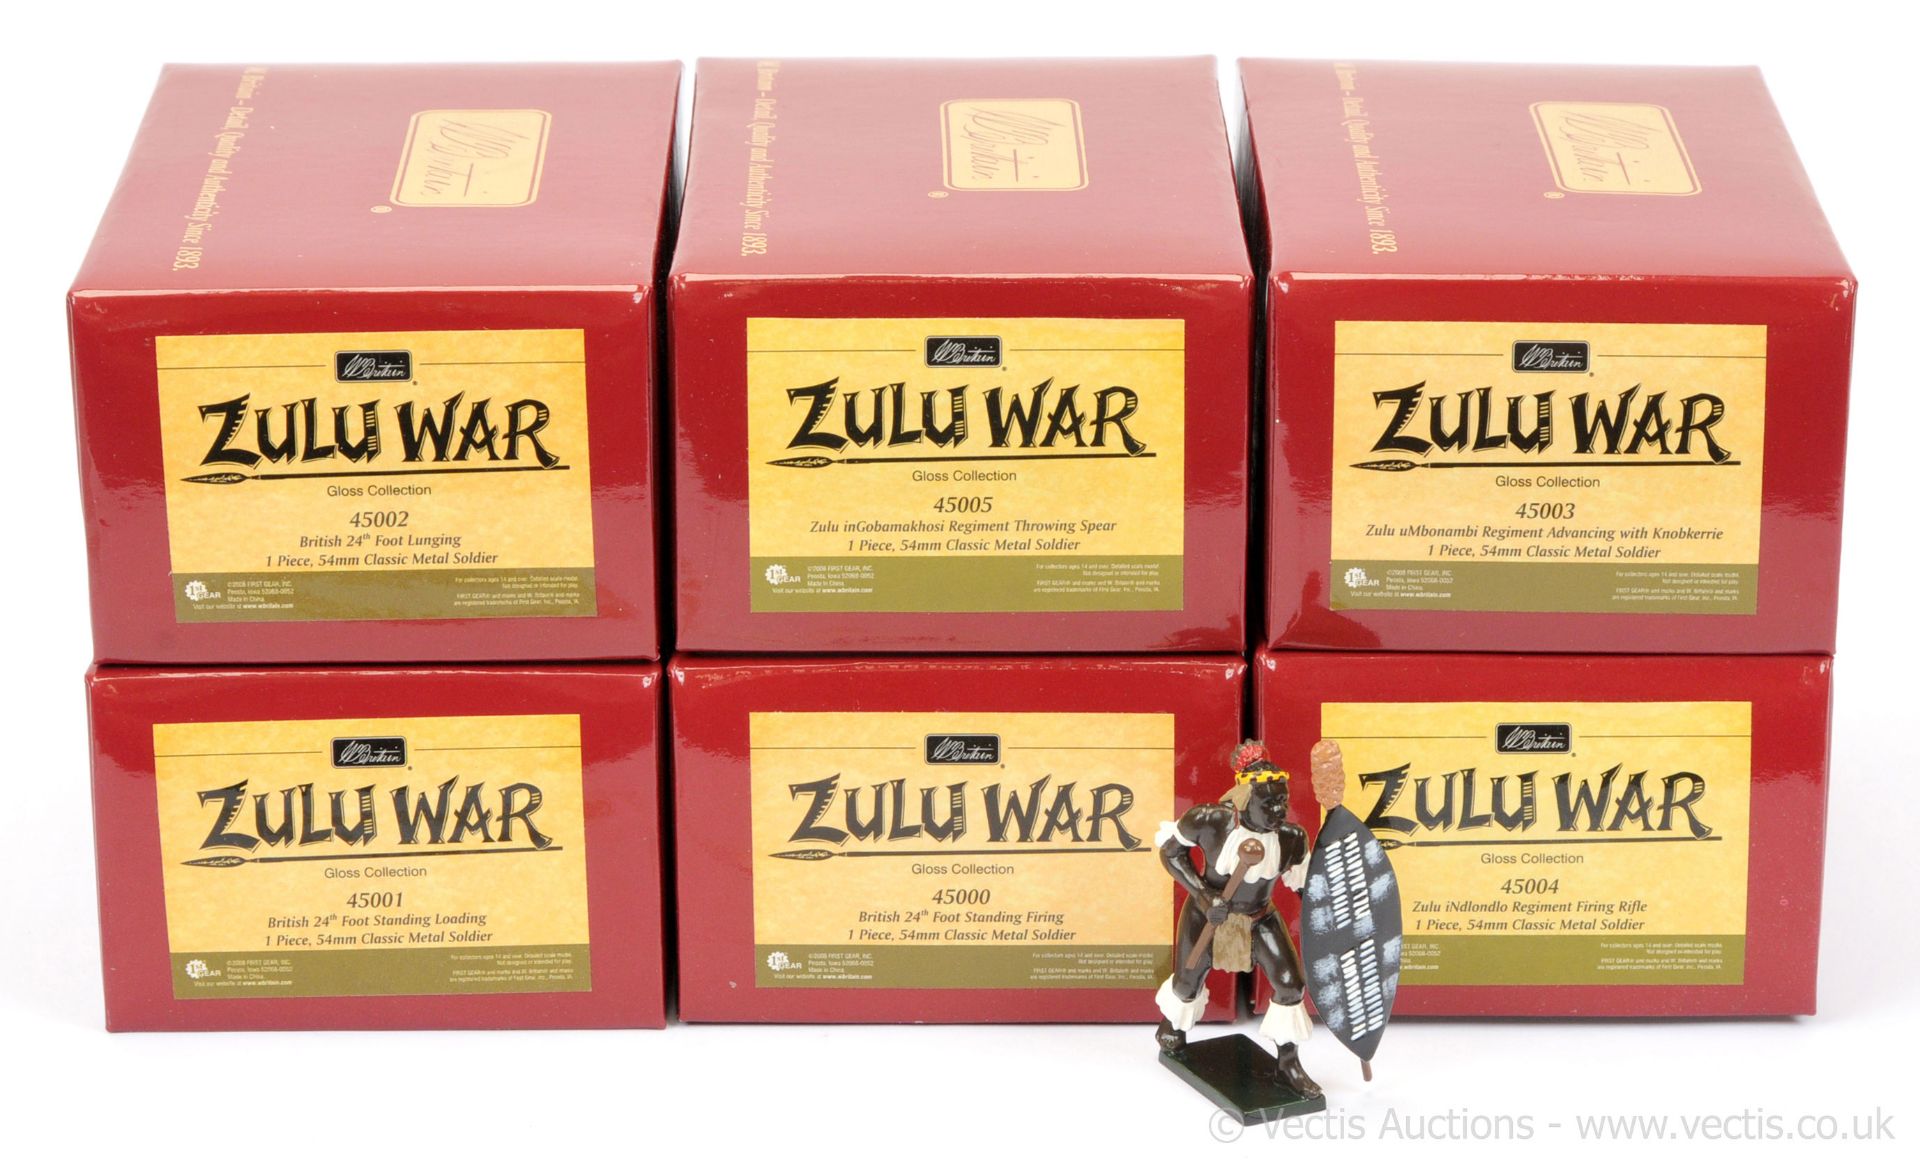 GRP inc Britains - Zulu War Series (Gloss